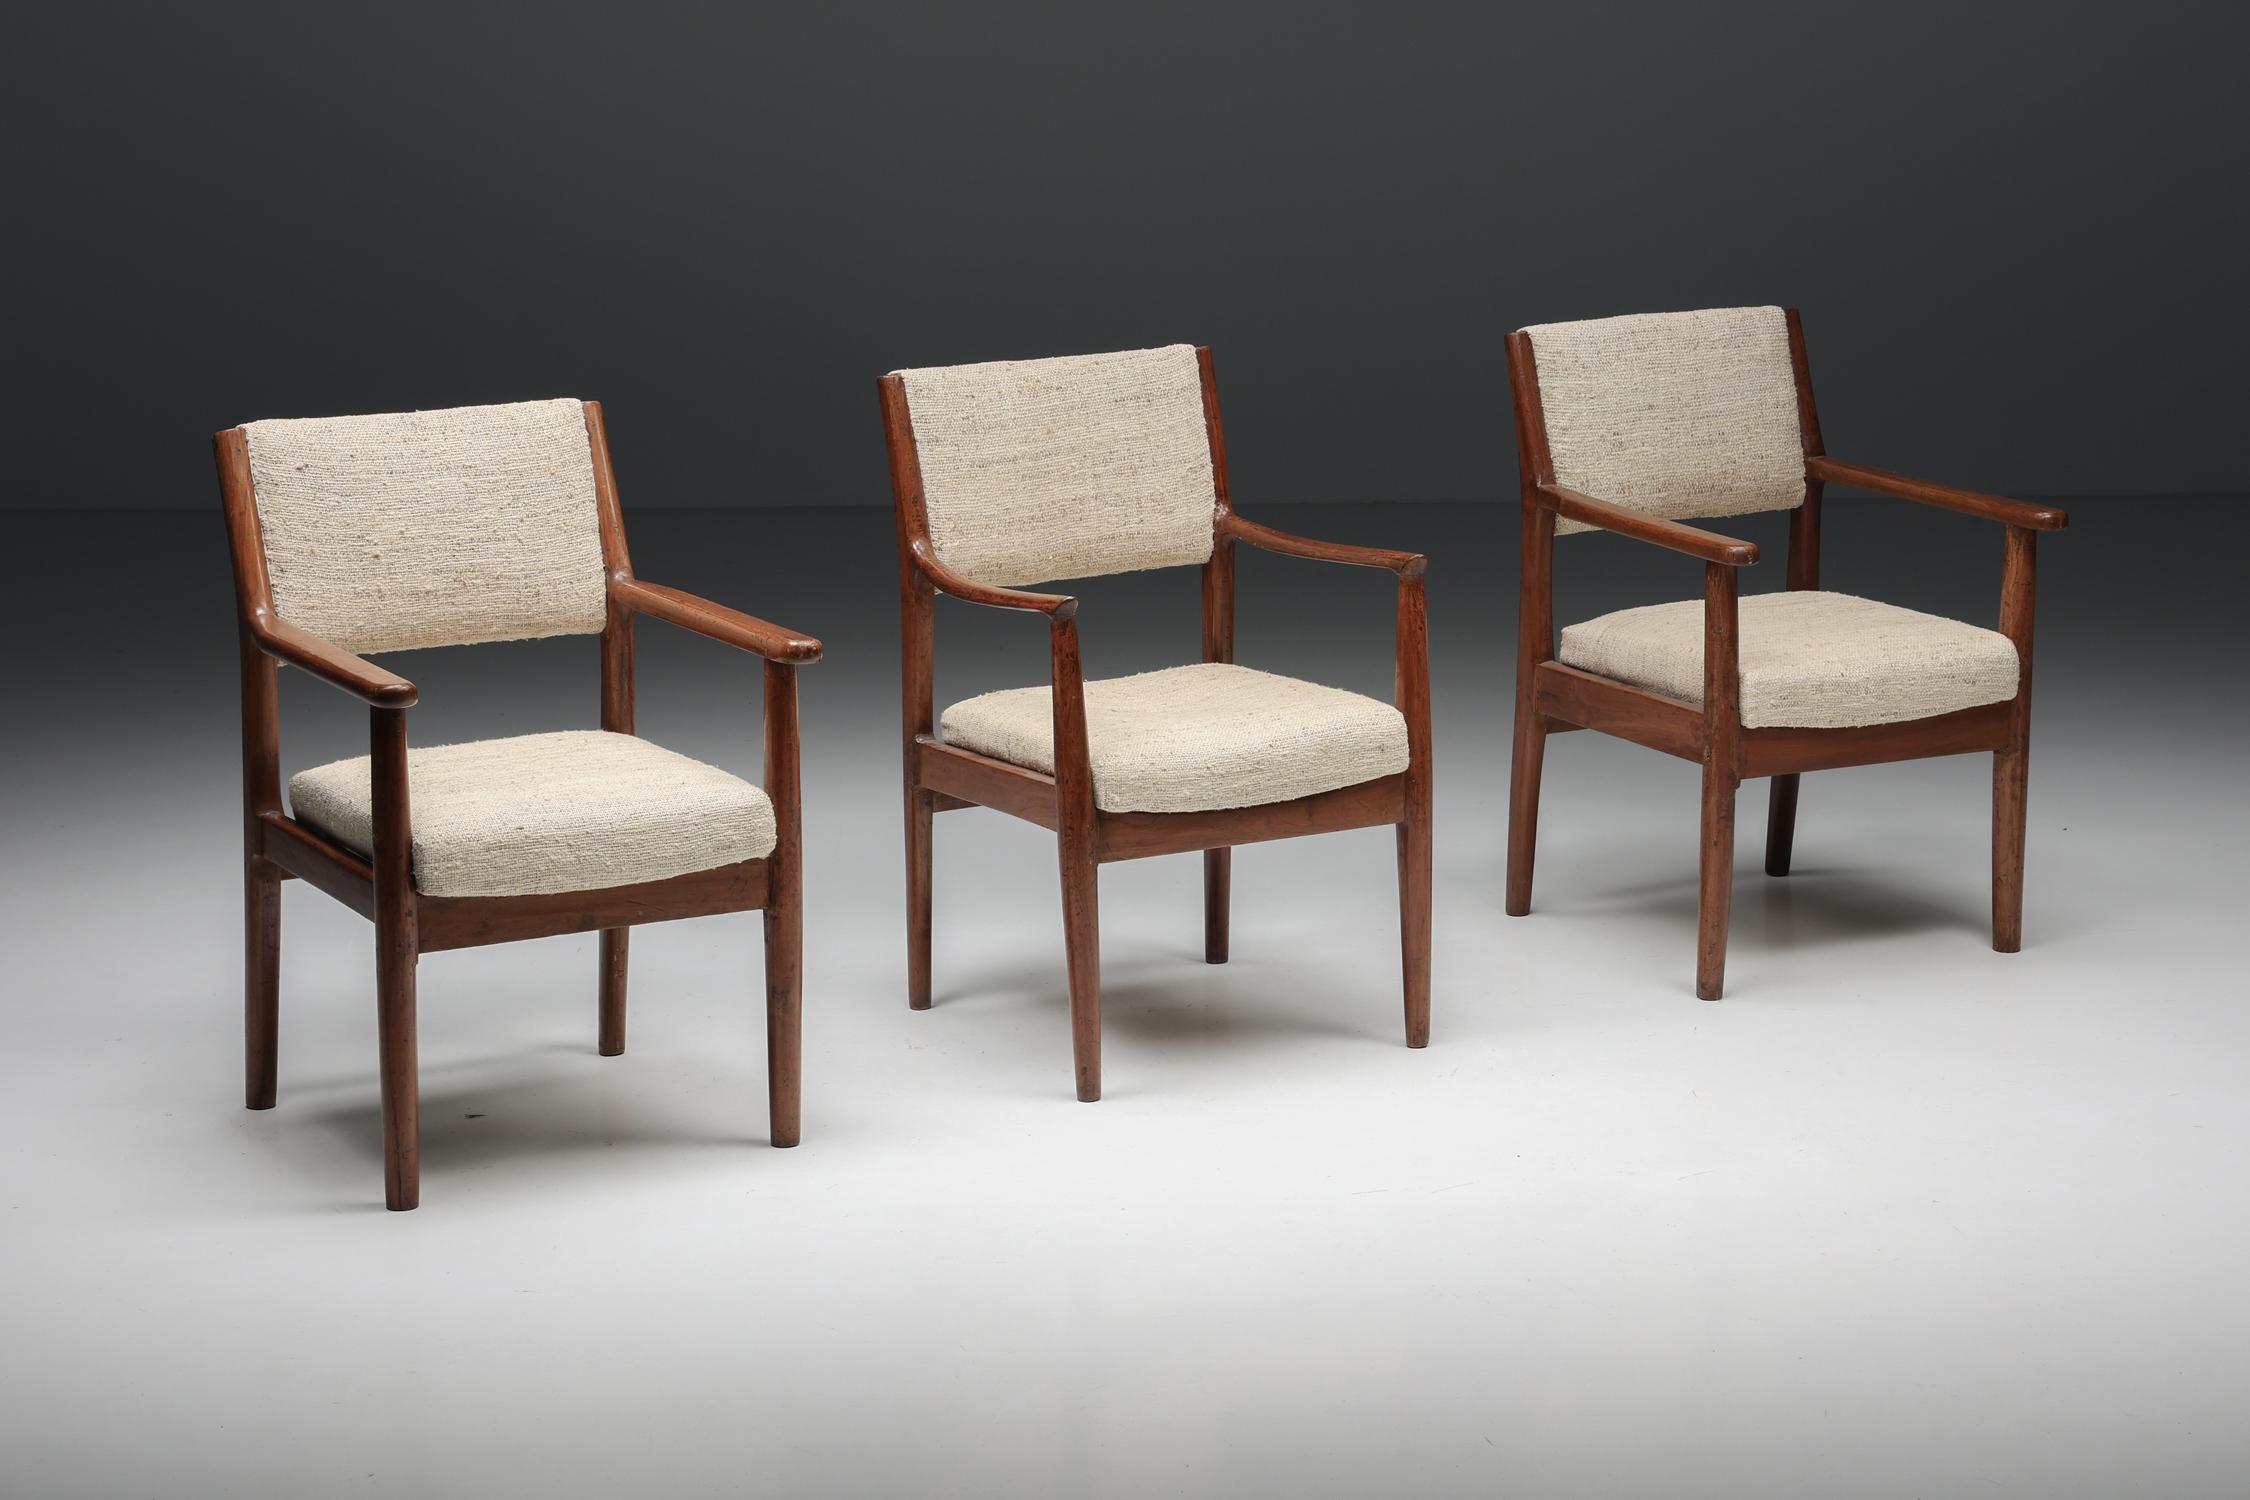 Pierre Jeanneret Chandigarh PSA-CC°315/166 Fauteuil, Chandigarh, Inde, 1952-1965

Ces fauteuils de Pierre Jeanneret ont été créés pour la ville de Chandigarh en Inde, la ville utopique créée par son cousin Le Corbusier. Ces chaises sont très